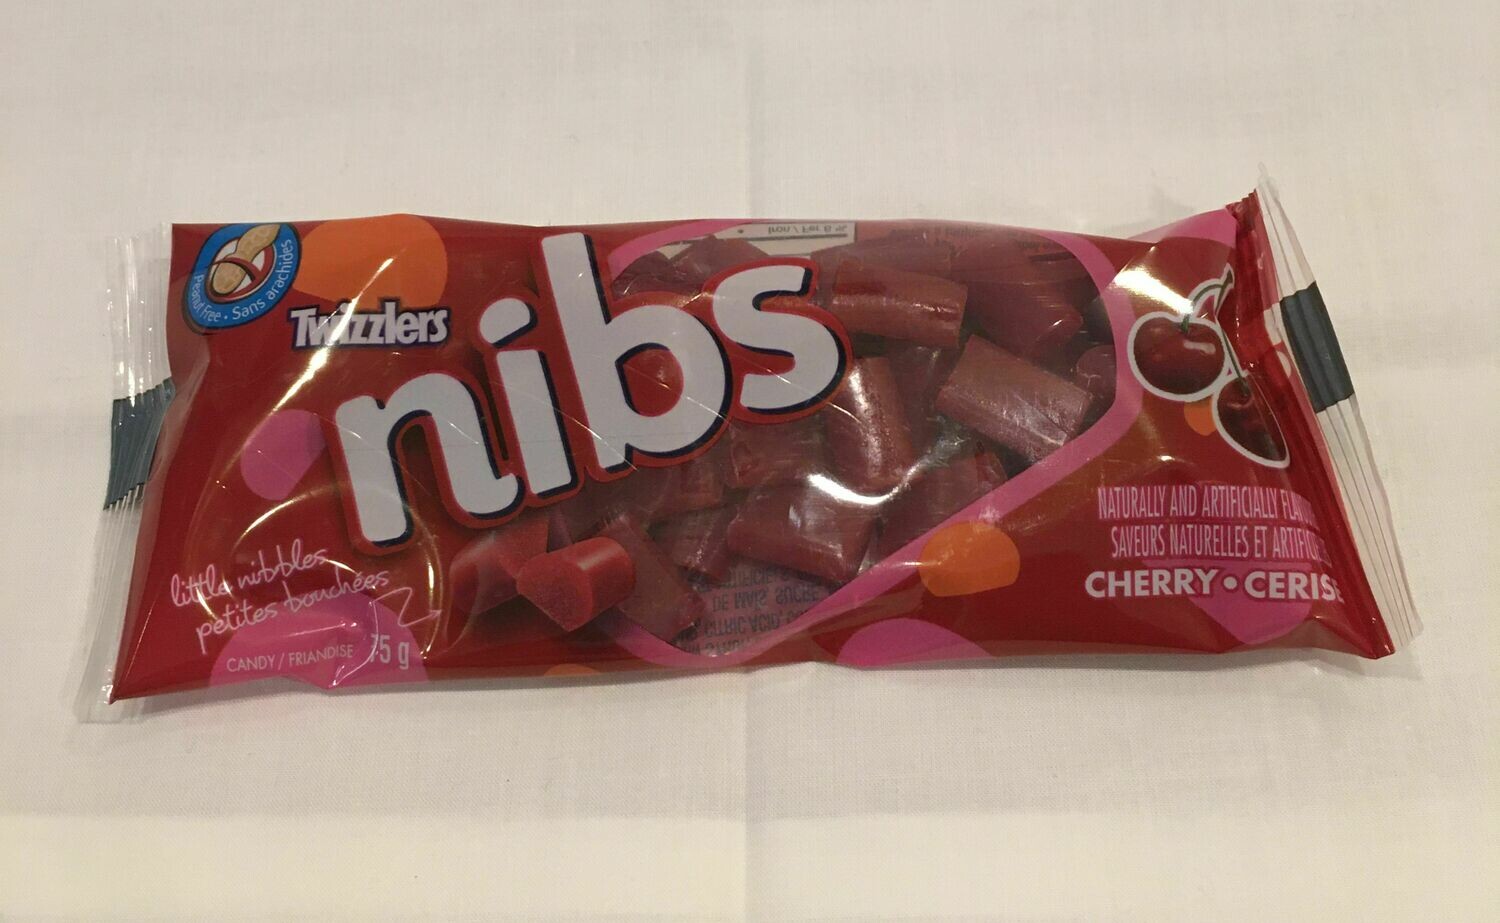 Nibs